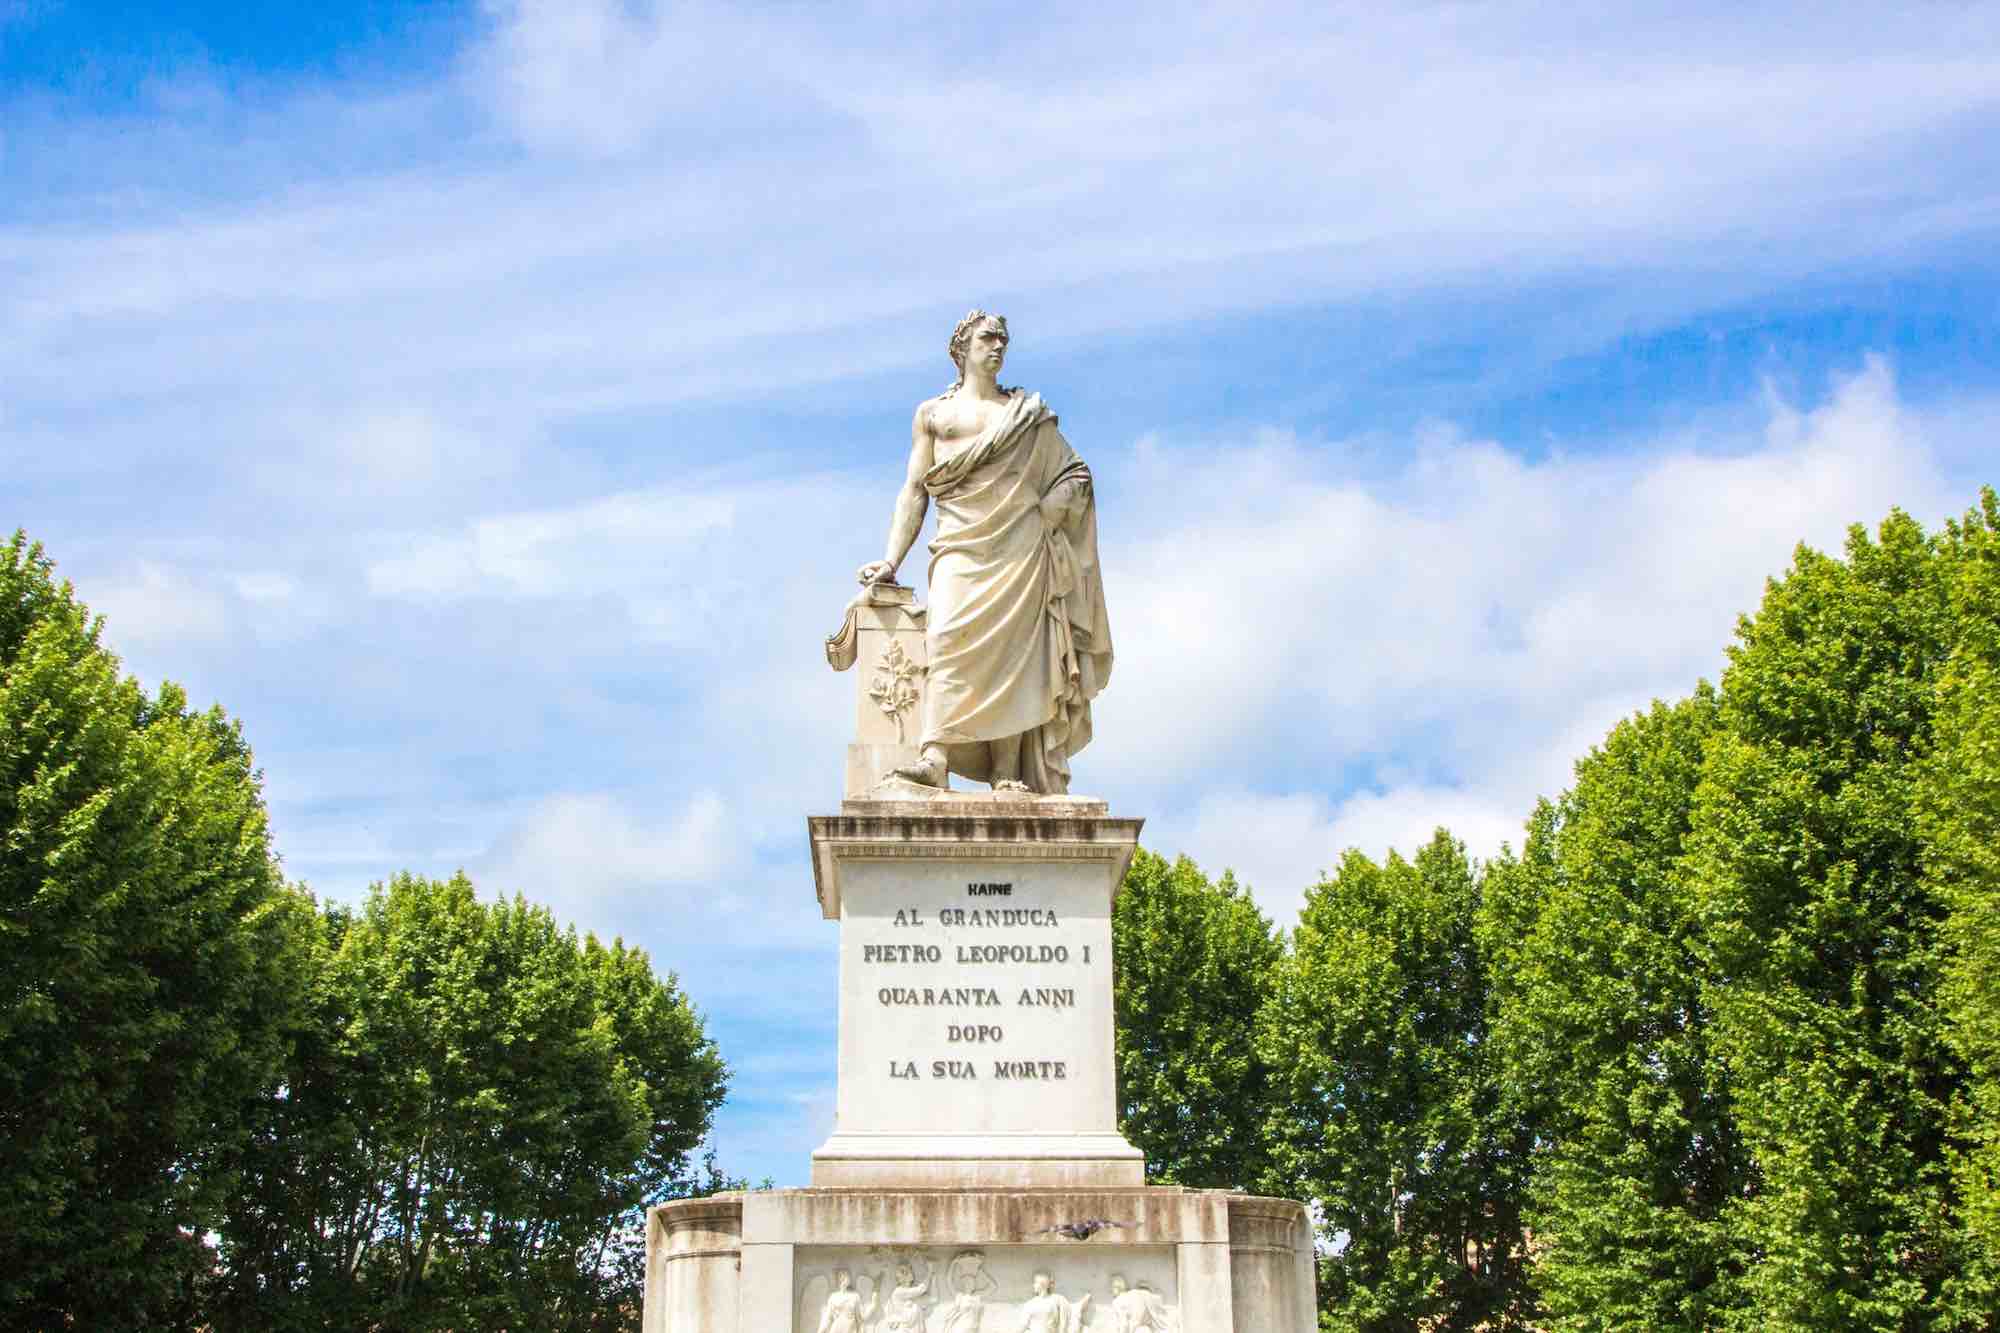 Monumento al Granduca Pietro Leopoldo I, in Piazza dei Martiri a Pisa